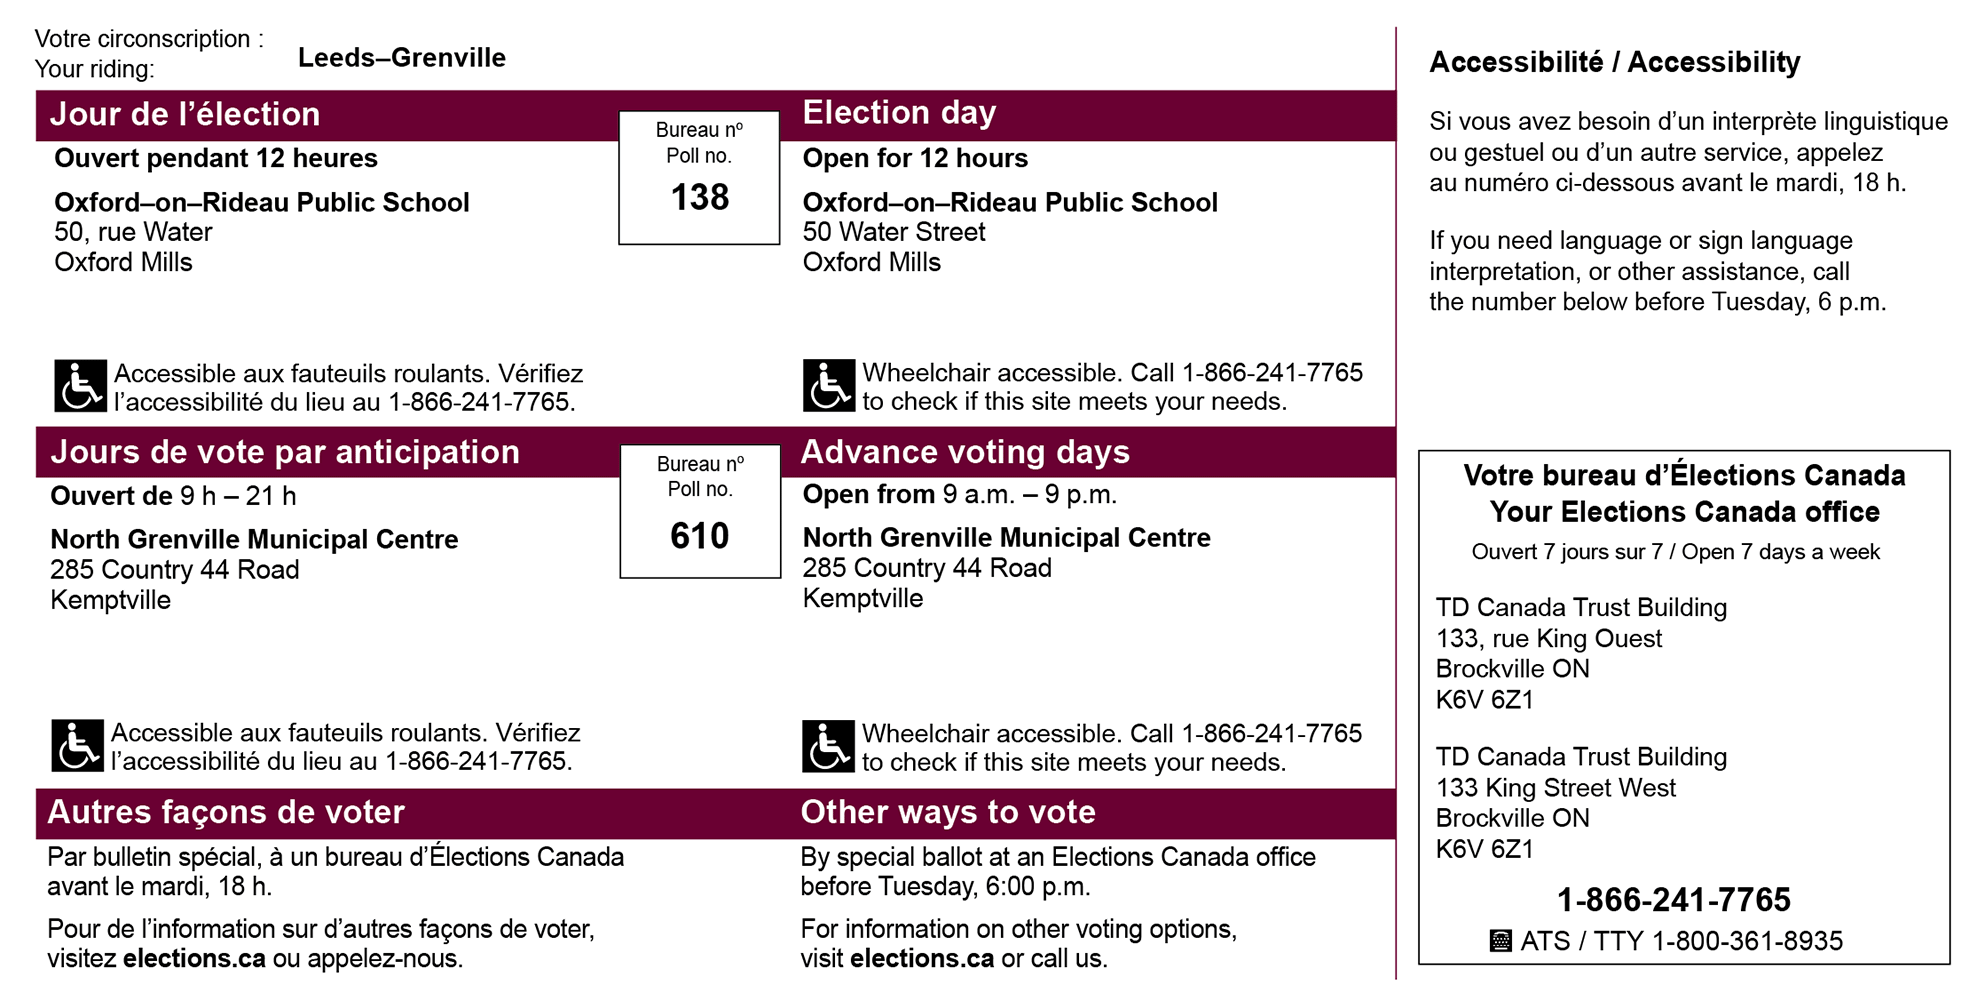 Image d’une carte d’information de l’électeur indiquant où voter le jour du scrutin ou lors des journées de vote anticipé, comportant une description de l’accessibilité du bureau de vote, et indiquant comment obtenir plus d’information sur l’accessibilité ou sur les autres façons de voter